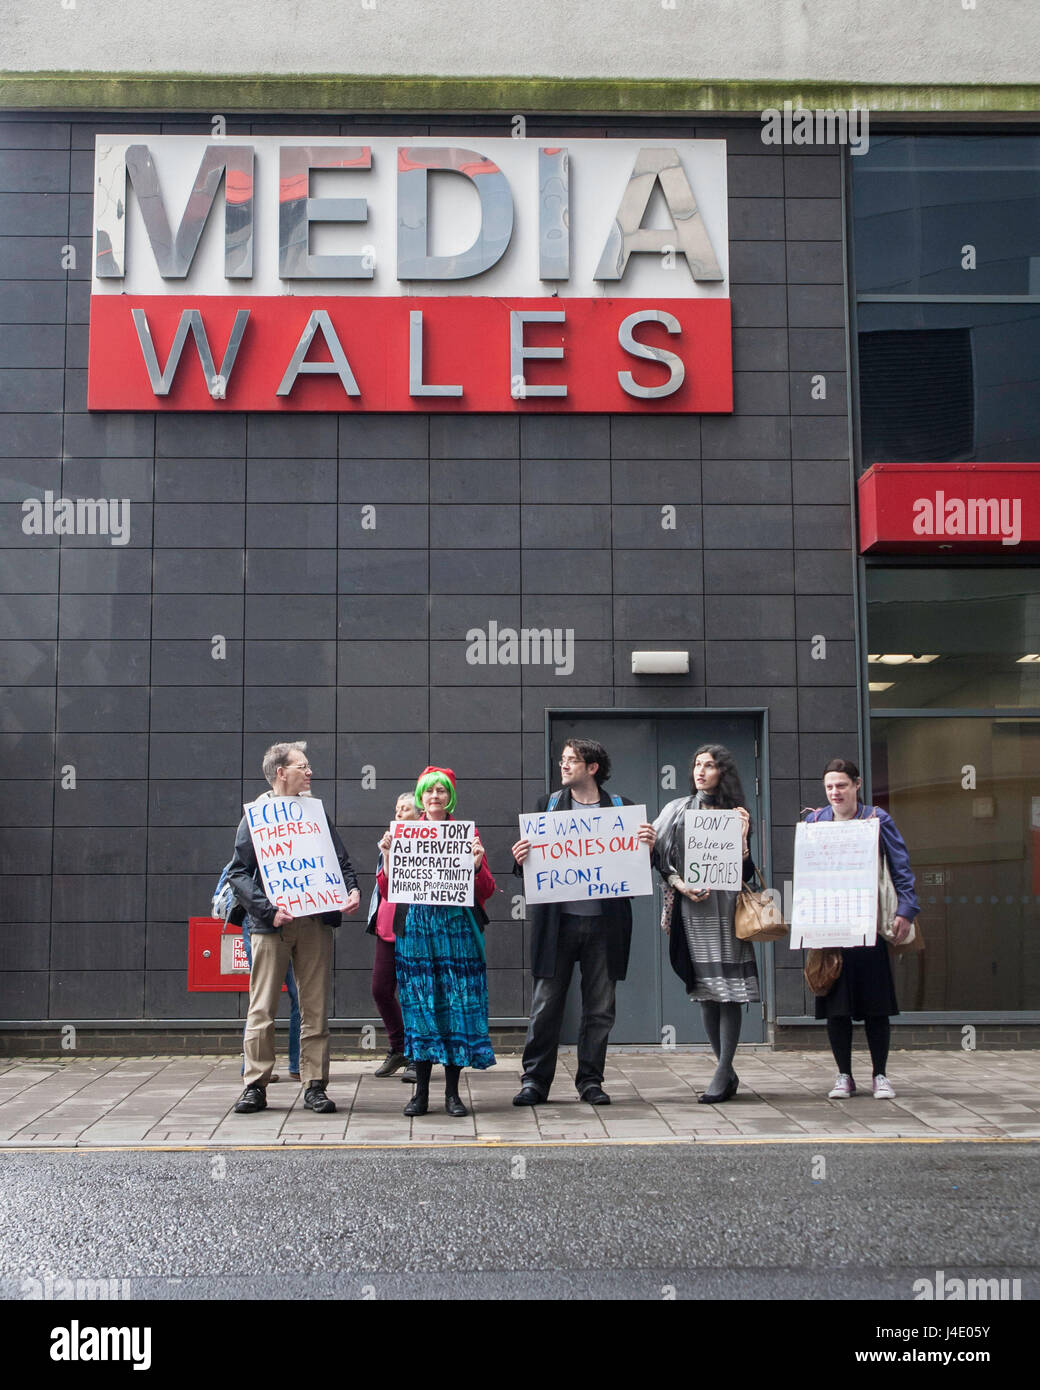 Cardiff, UK. 11. Mai 2017. Protest gegen das South Wales Echo, einer lokalen Zeitung für den Betrieb vor kurzem einer ganzseitige Anzeige auf der Titelseite mit der Aufforderung an Menschen für Theresa May und die Konservativen stimmen. Taz Rahman/Alamy Live-Nachrichten Stockfoto